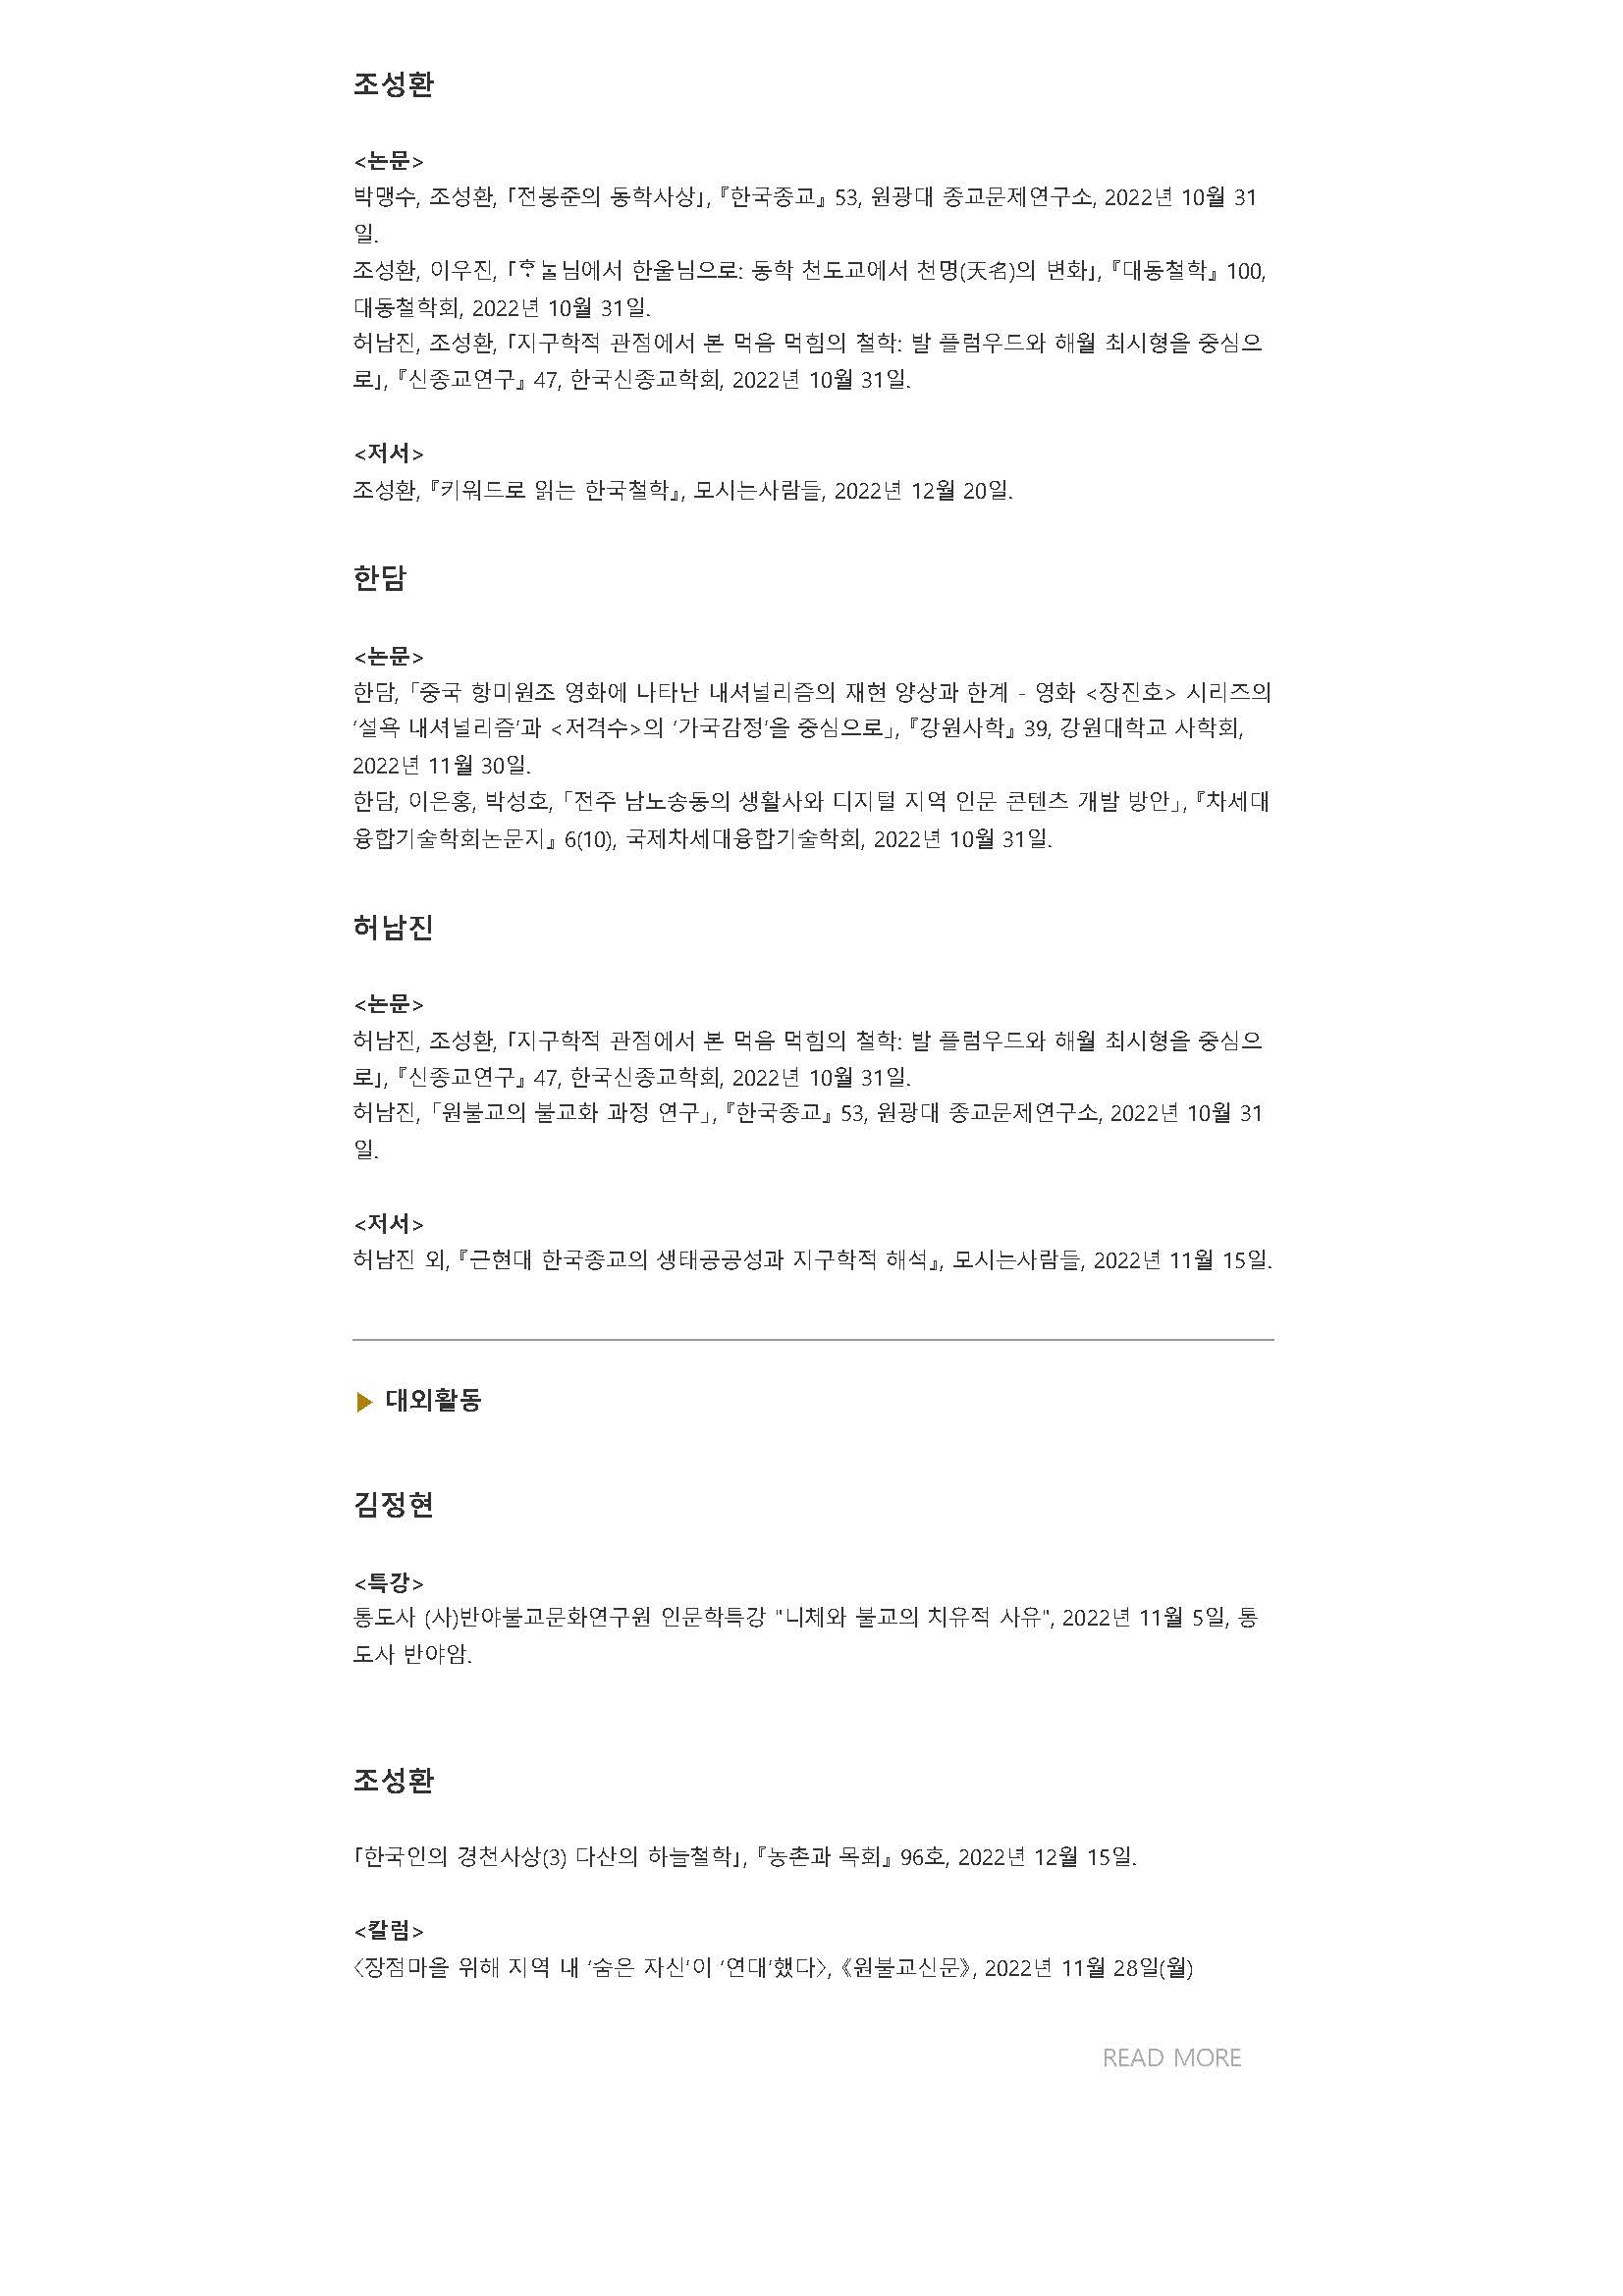 원광대 HK+ 동북아시아인문사회연구소 뉴스레터 VOL.13_페이지_09.jpg